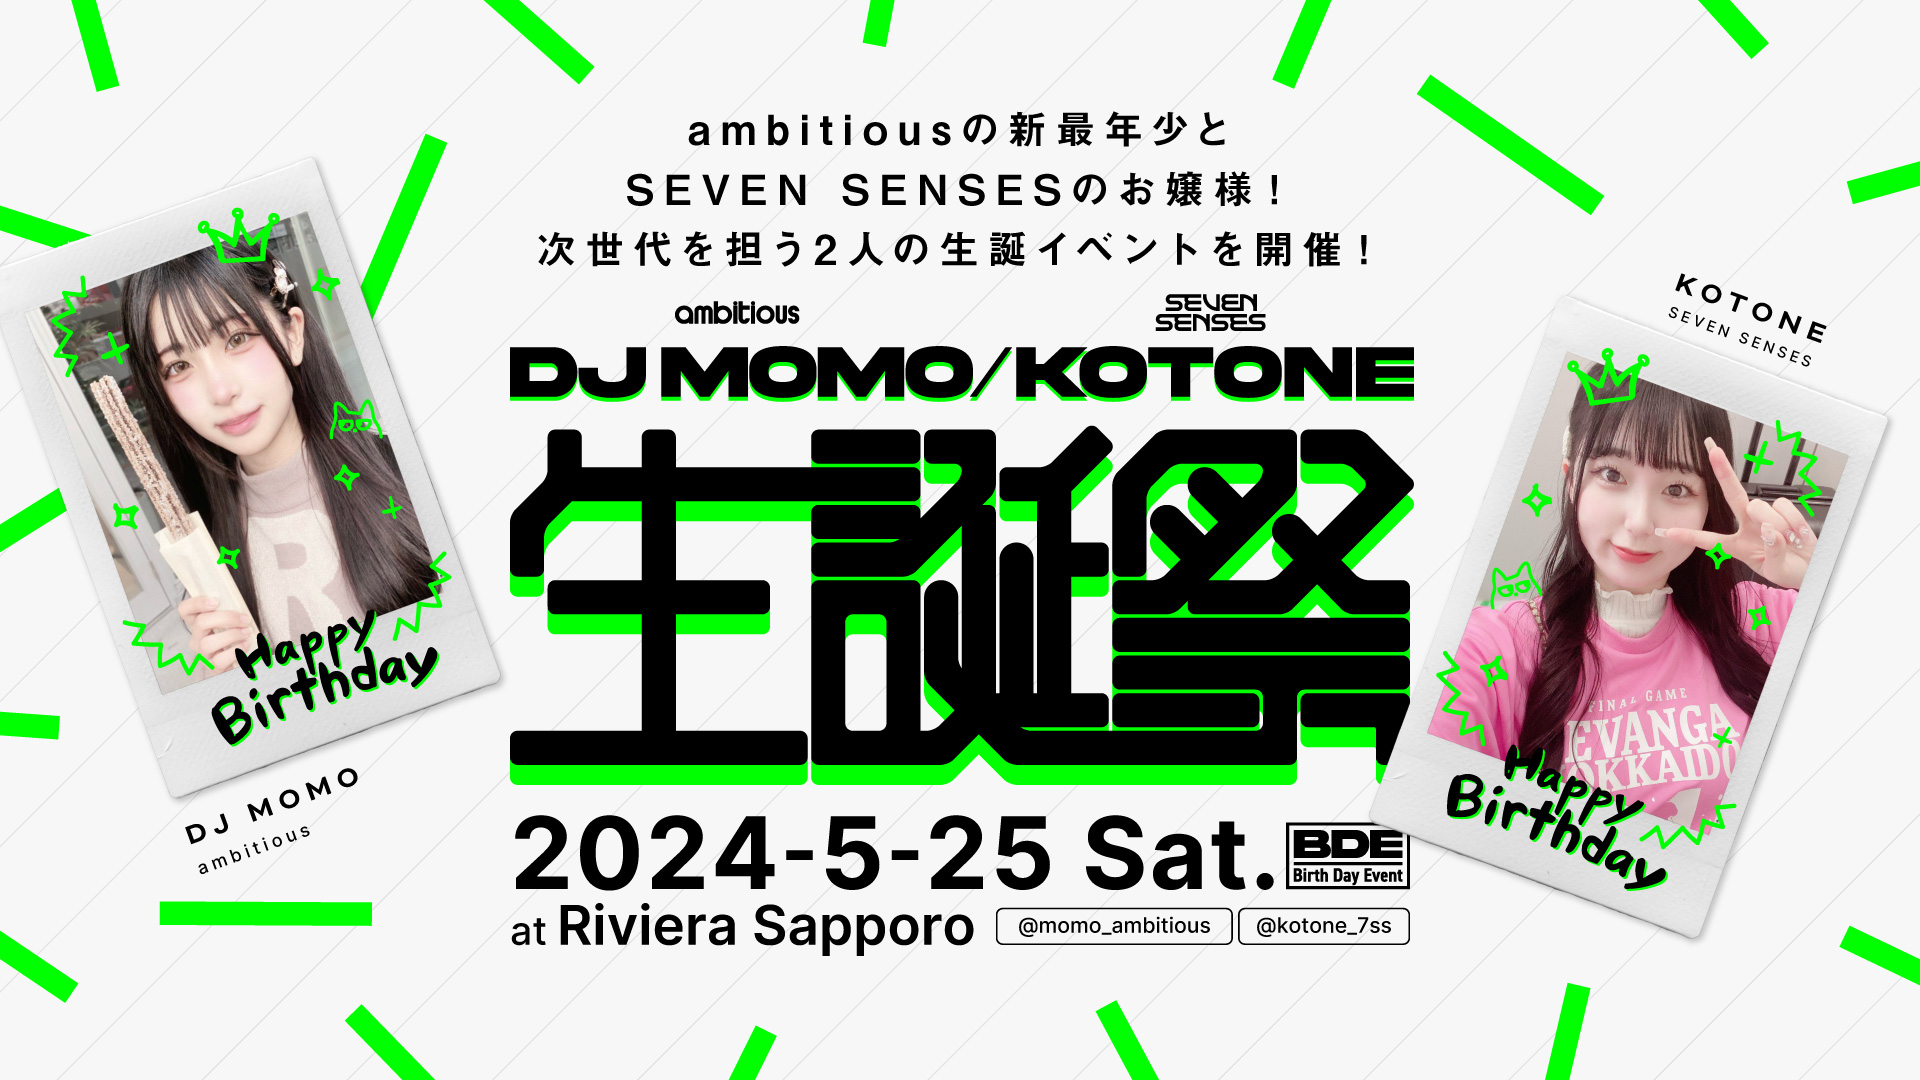 5/25、DJ MOMO(ambitious)とKOTONE(SEVEN SENSES)のバースデーイベントをRiviera Sapporoにて開催します！